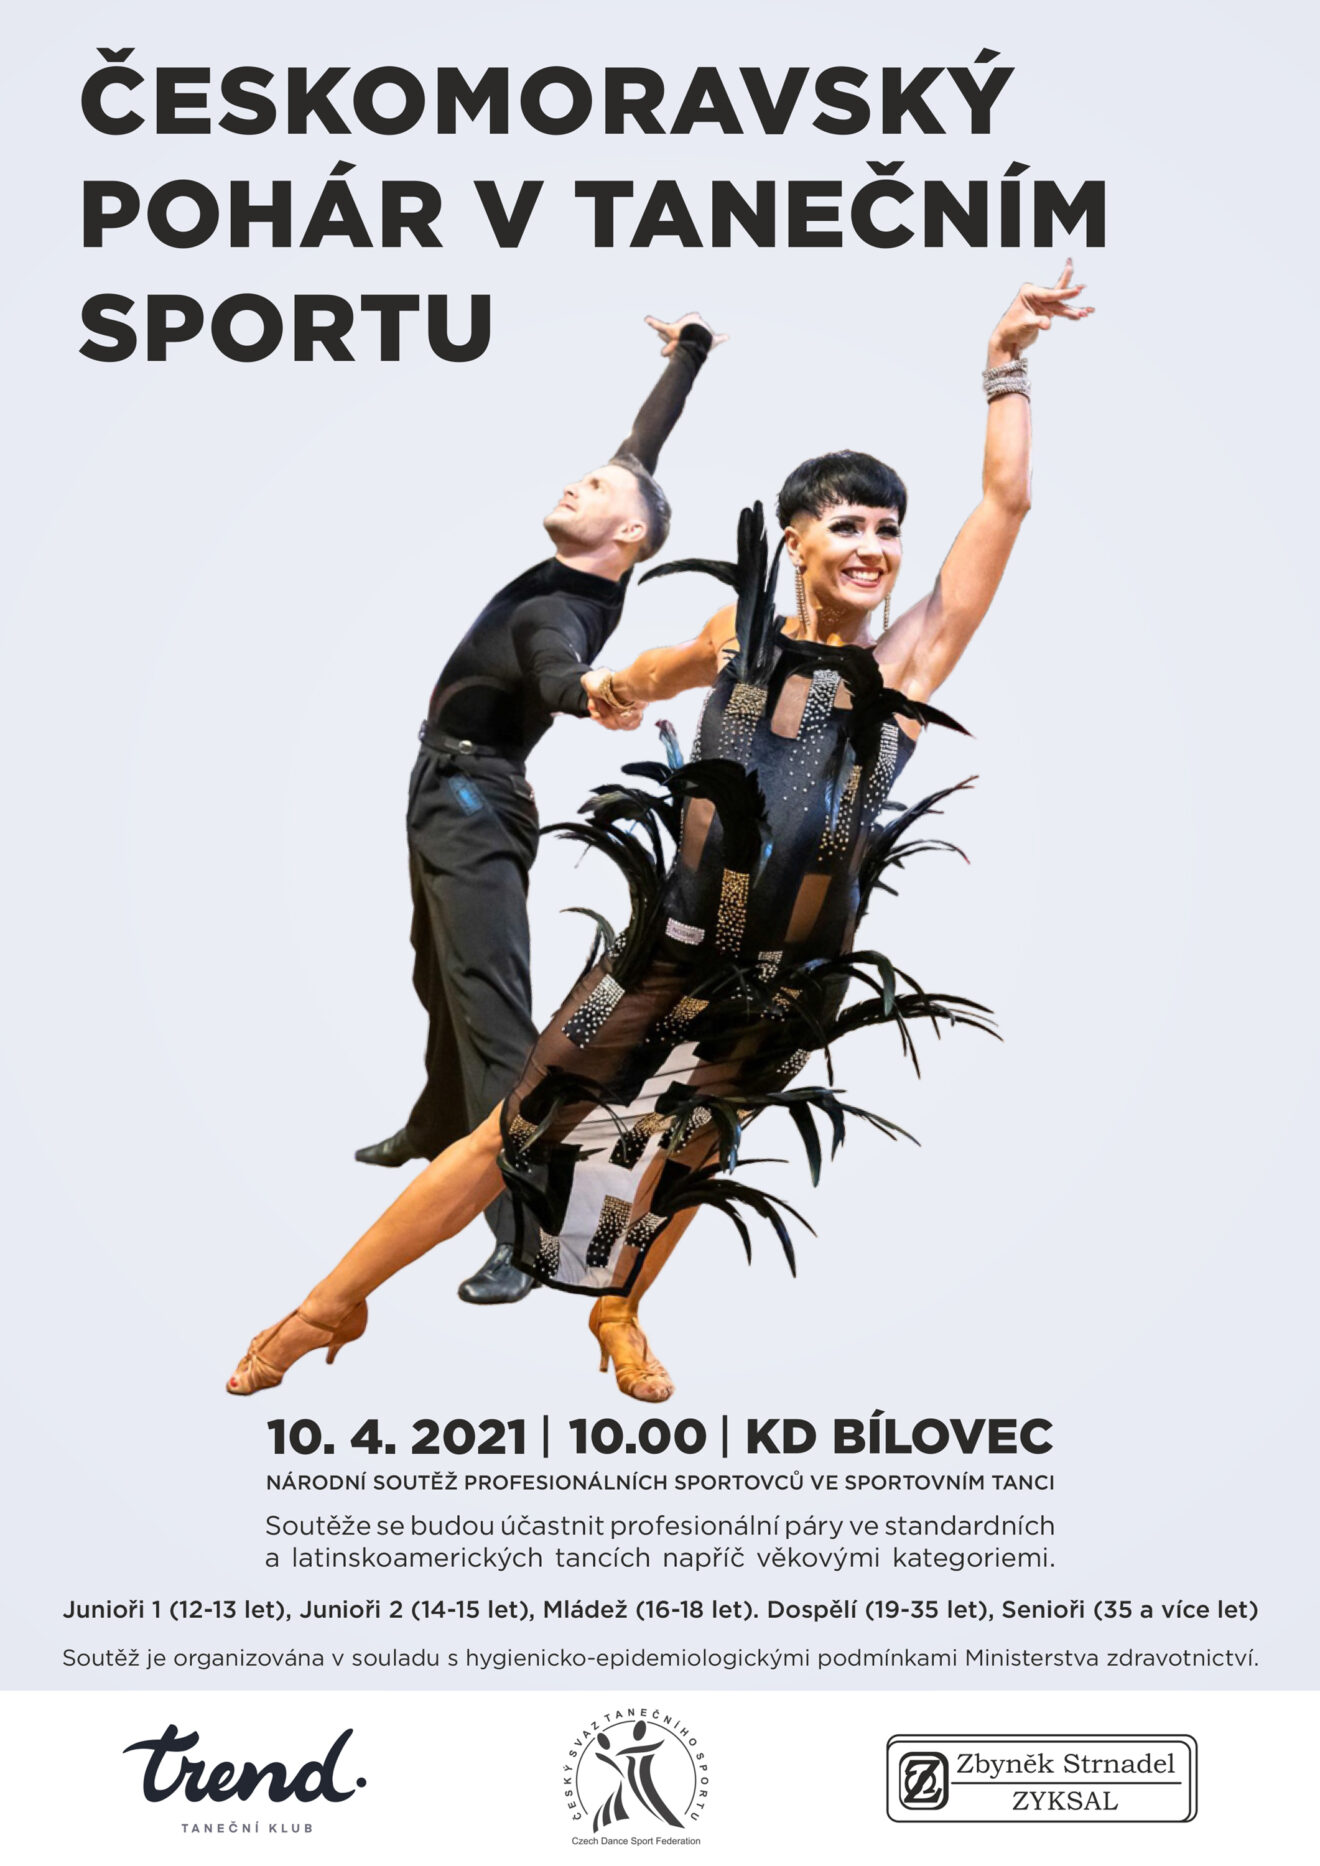 Českomoravský pohár v tanečním sportu